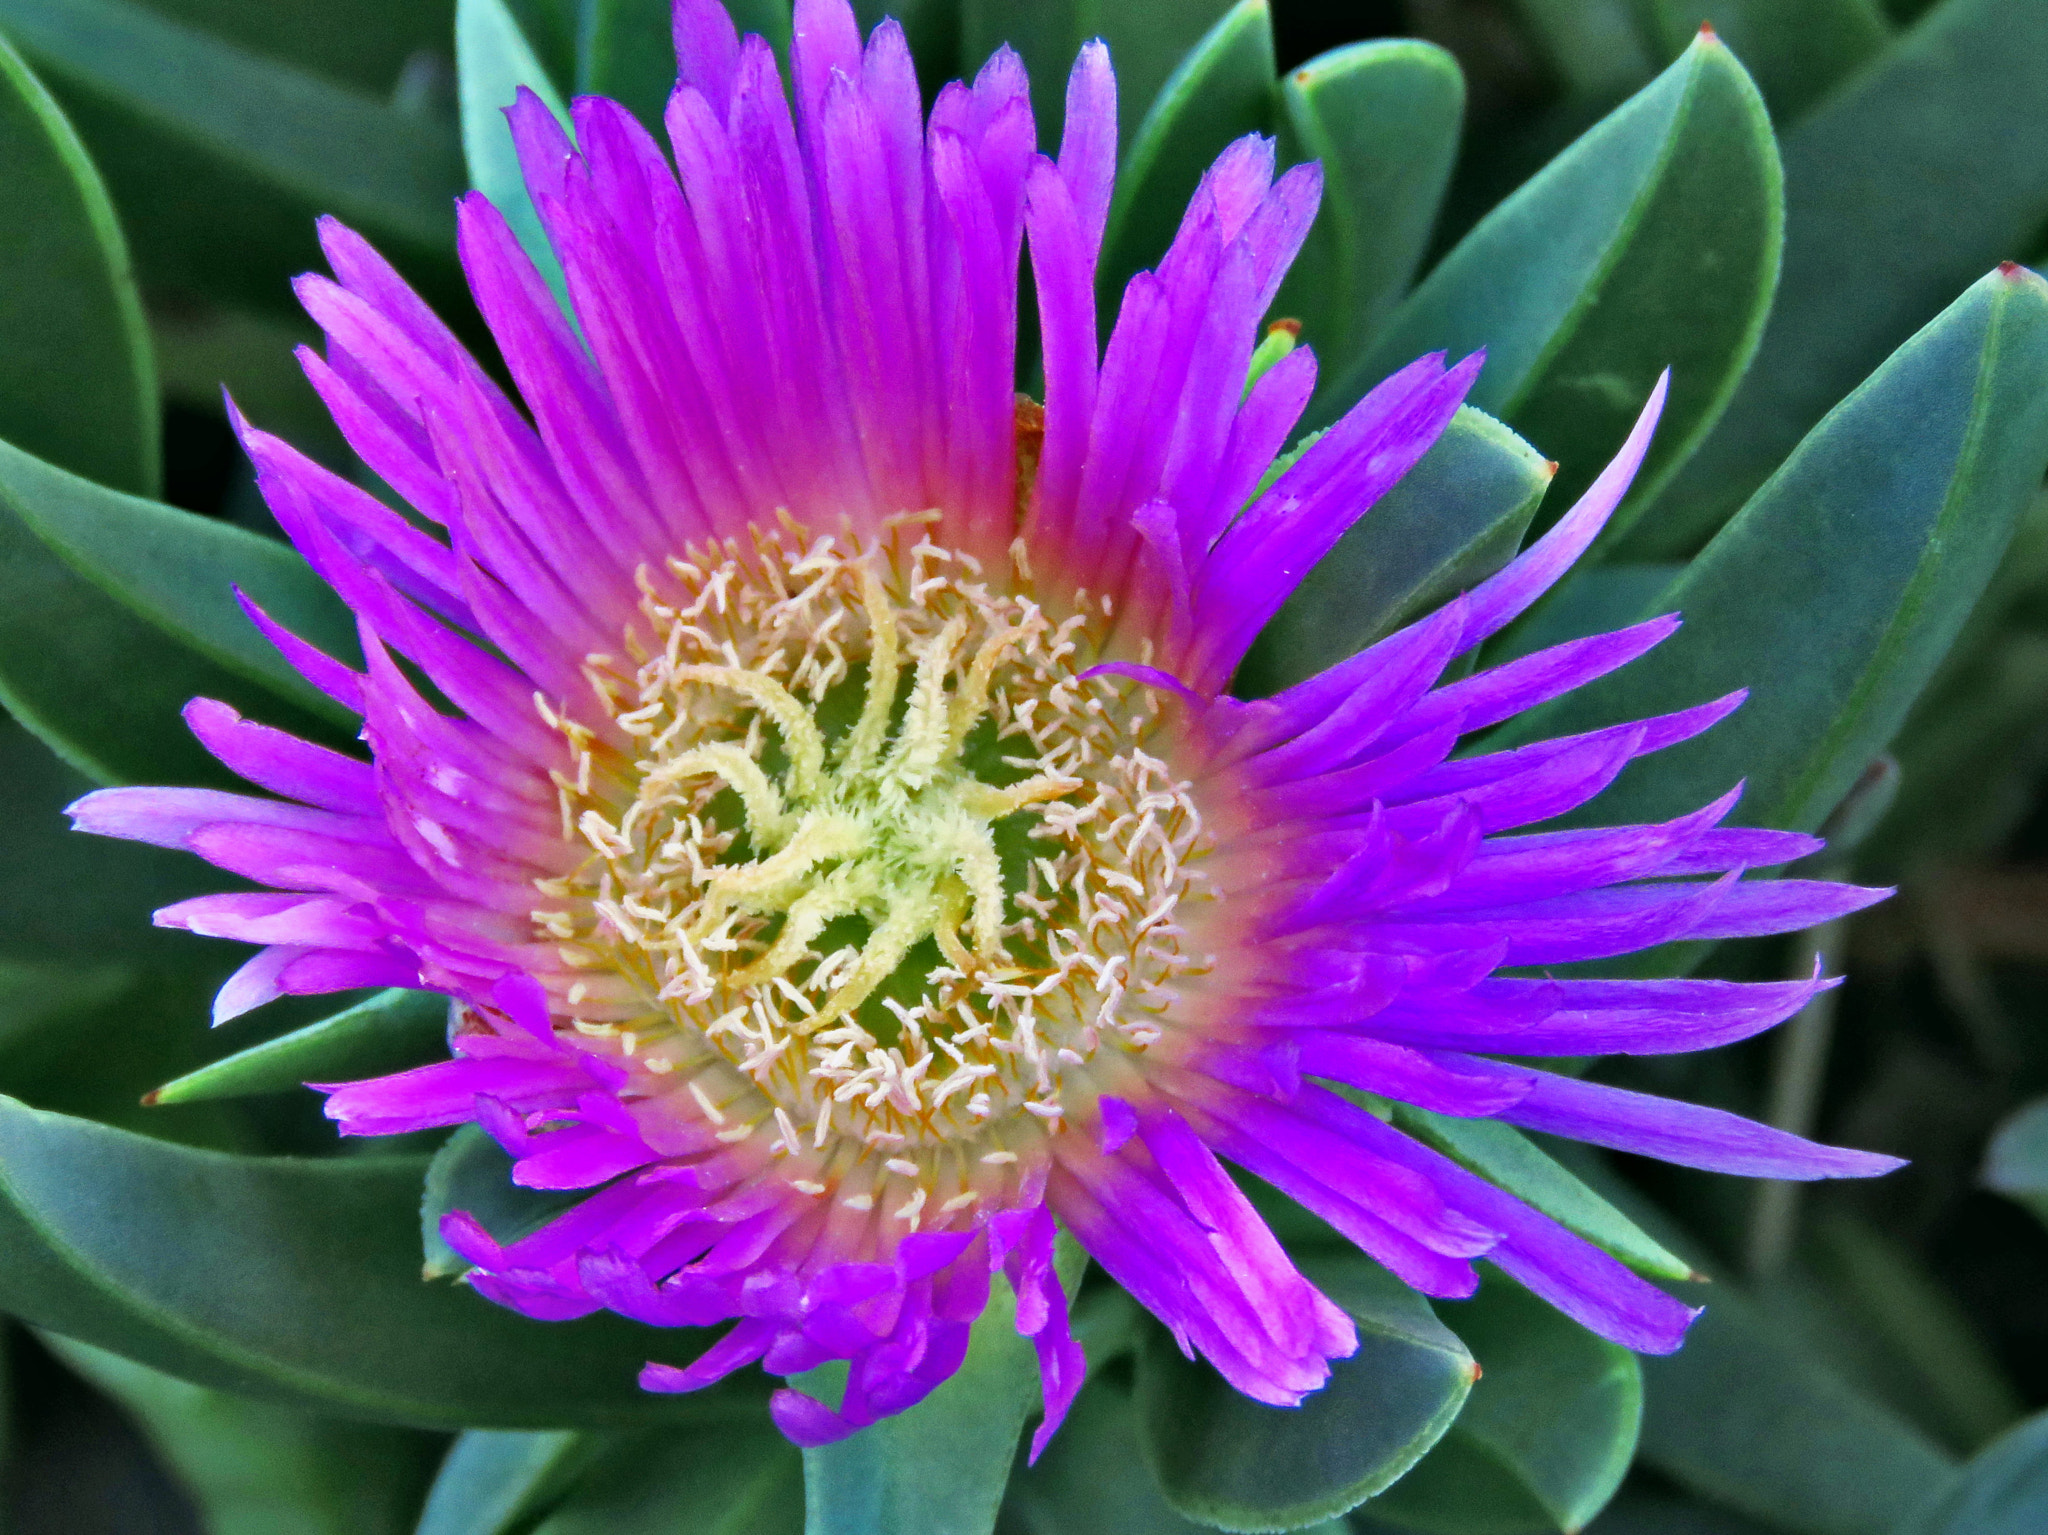 Canon PowerShot SX60 HS sample photo. A blue dandelion flower photography